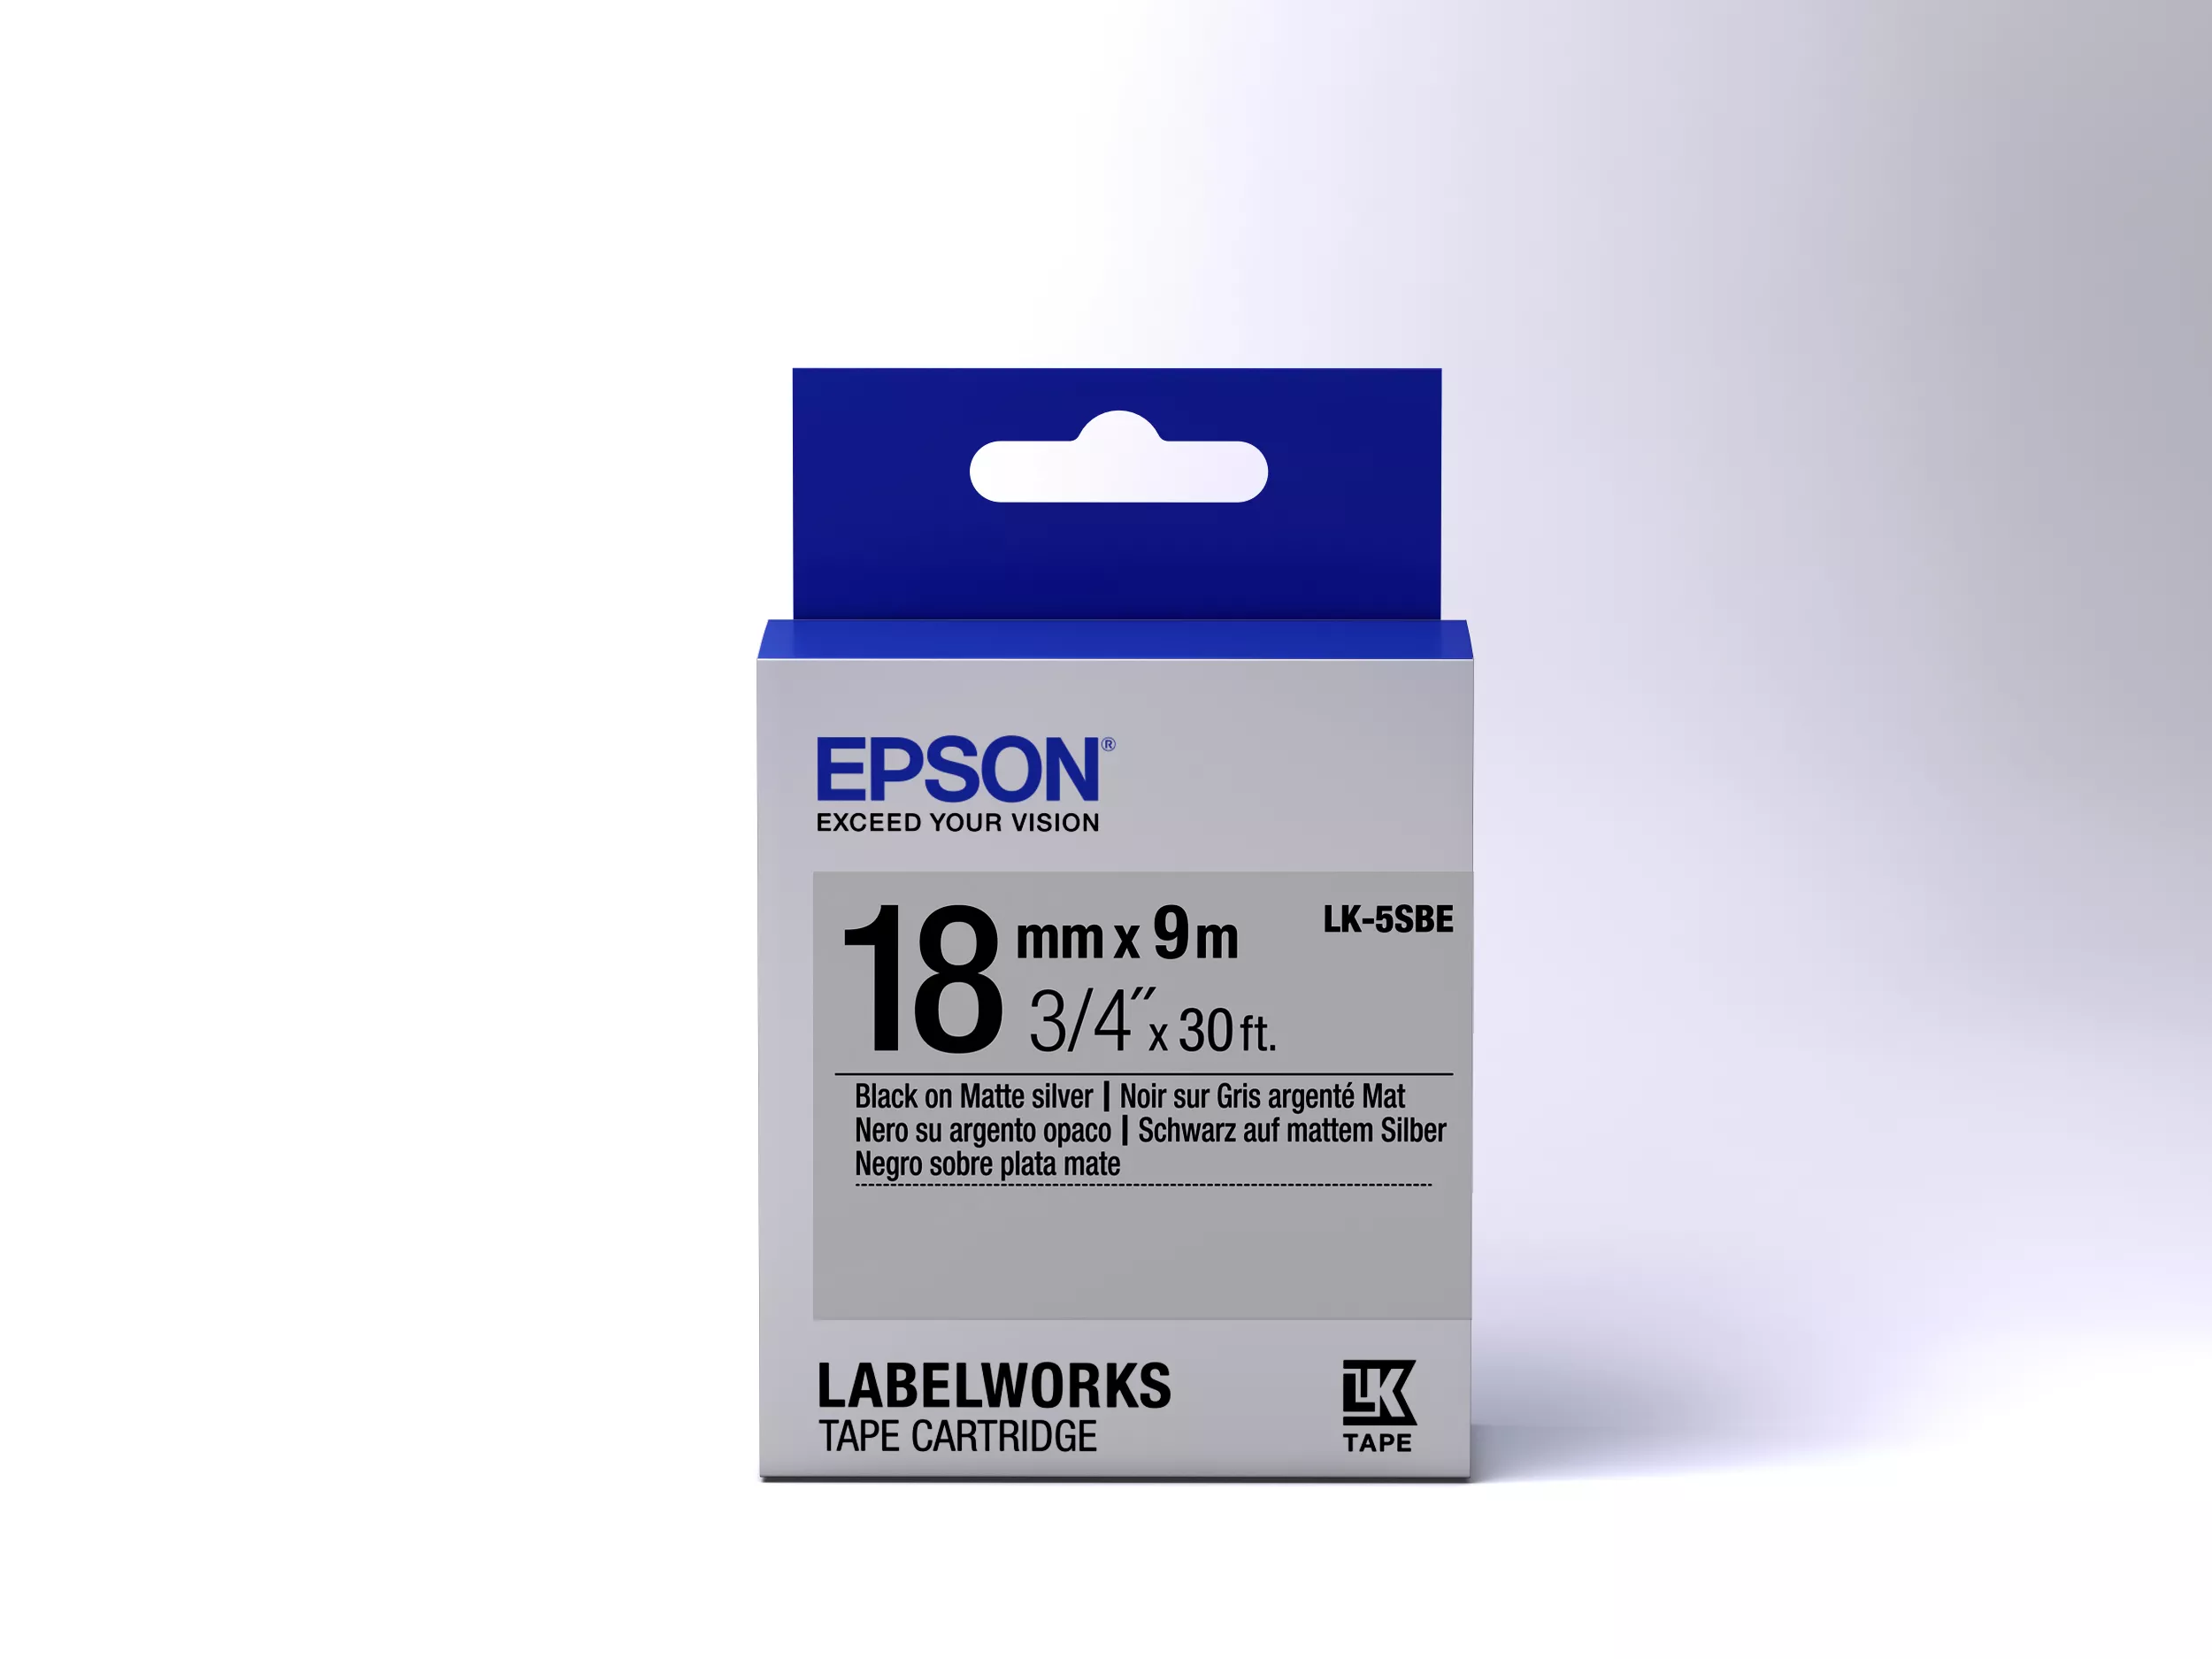 Vente Epson LK-5SBE - Mat - Noir sur Argent Epson au meilleur prix - visuel 2